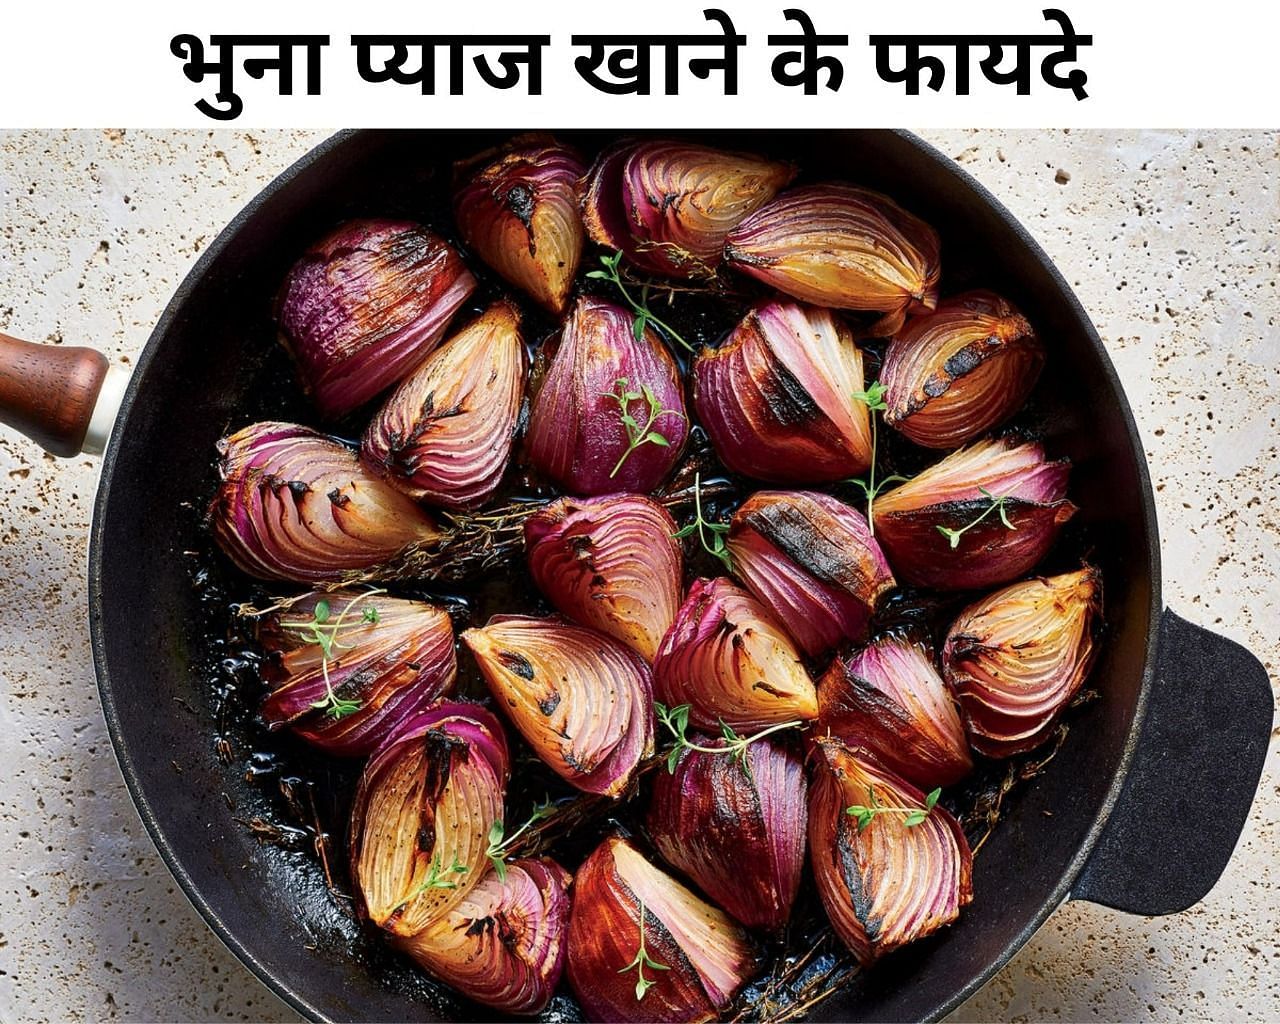  भुना प्याज खाने के फायदे  (फोटो - sportskeeda hindi)